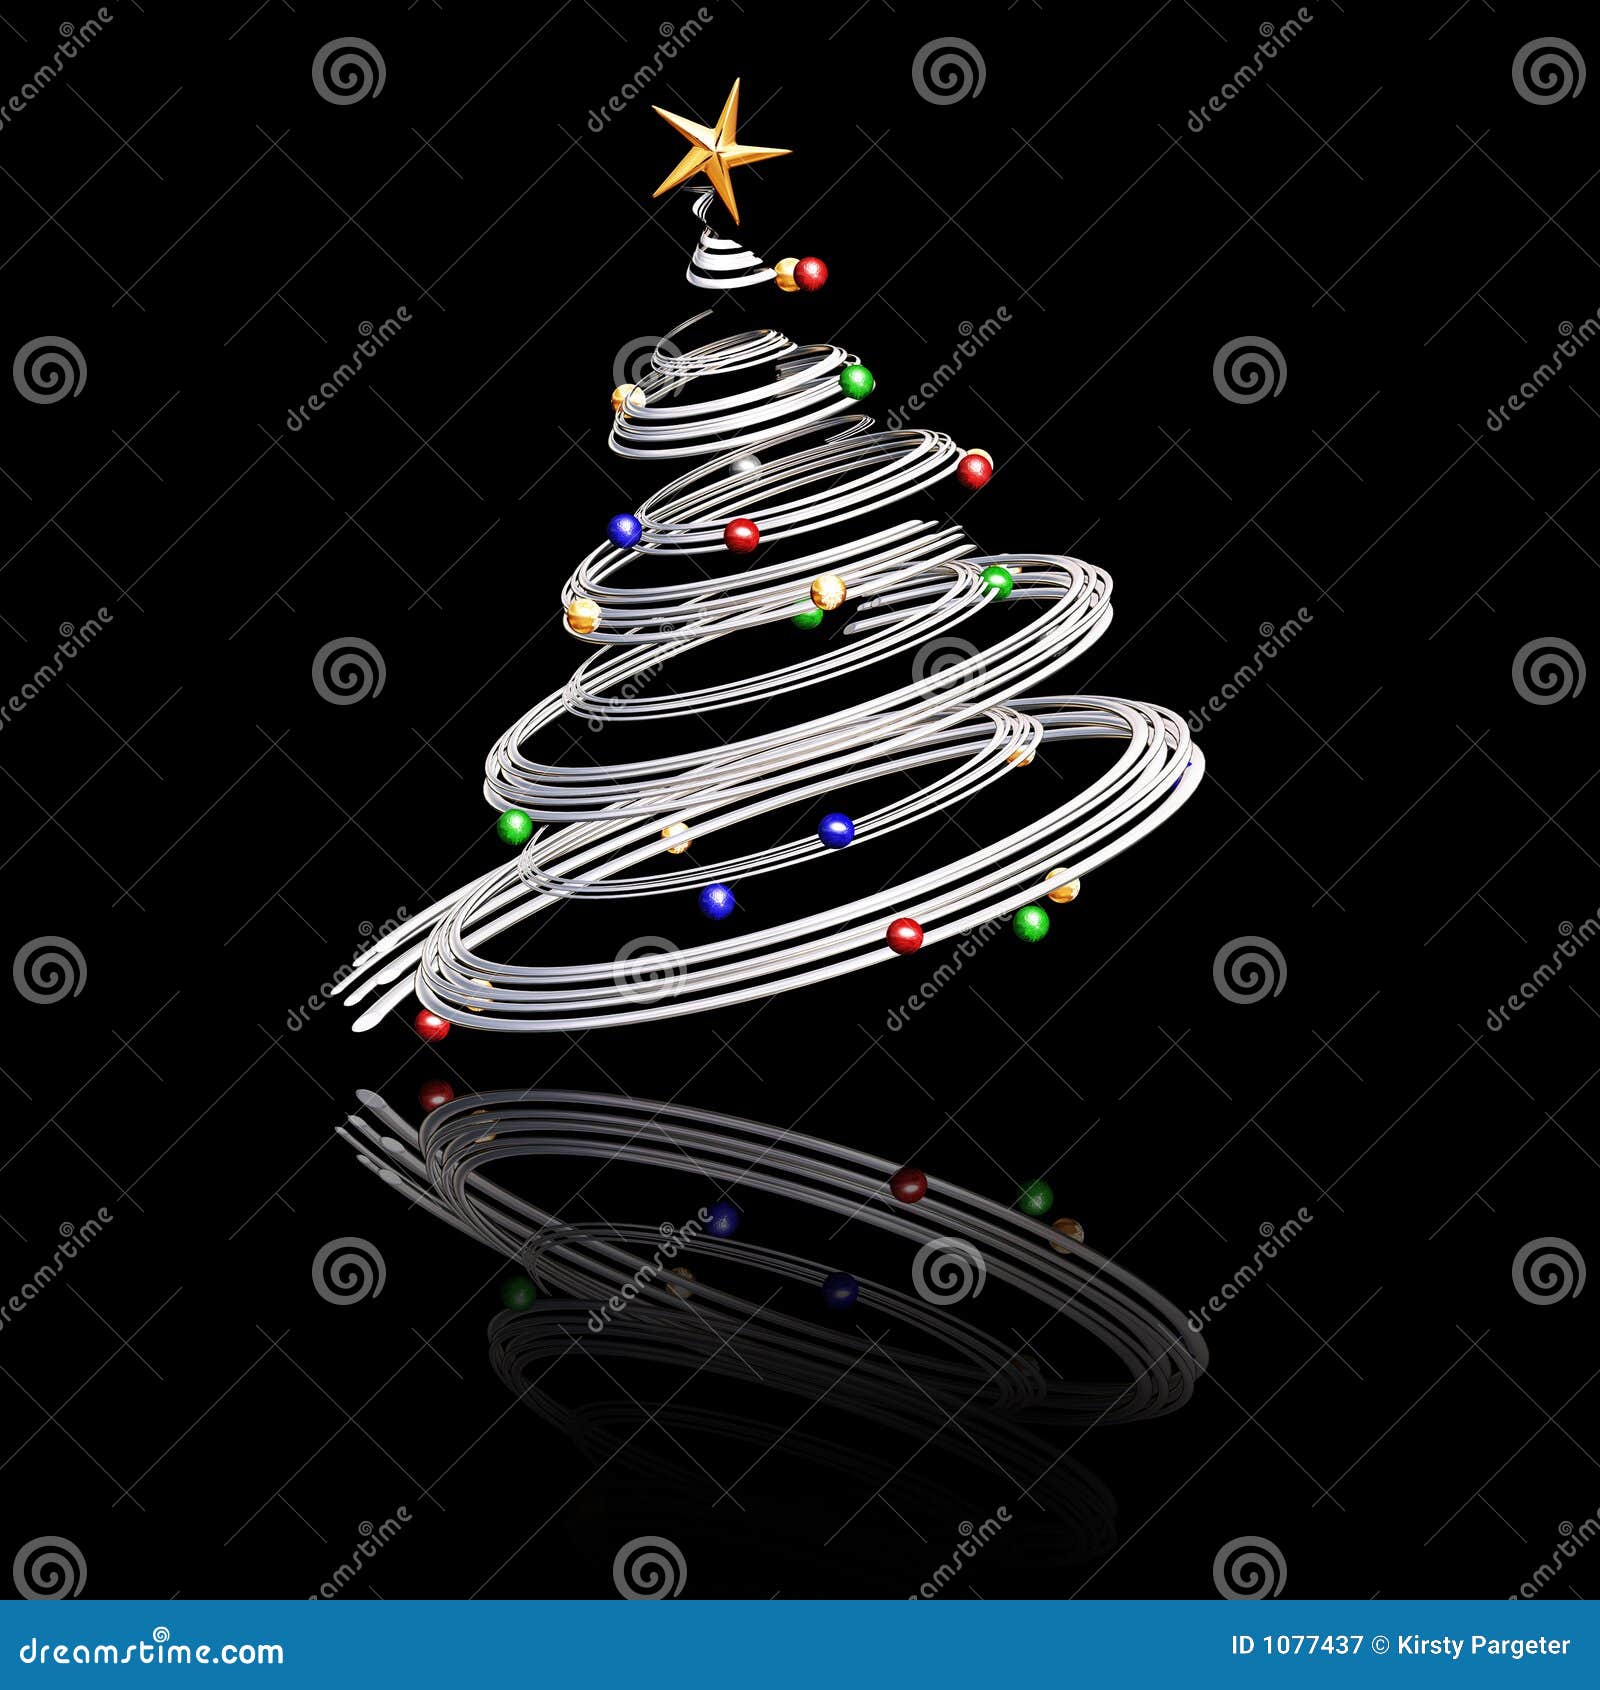 Foto Di Natale 3d.Albero Di Natale 3d Illustrazione Di Stock Illustrazione Di Abete 1077437